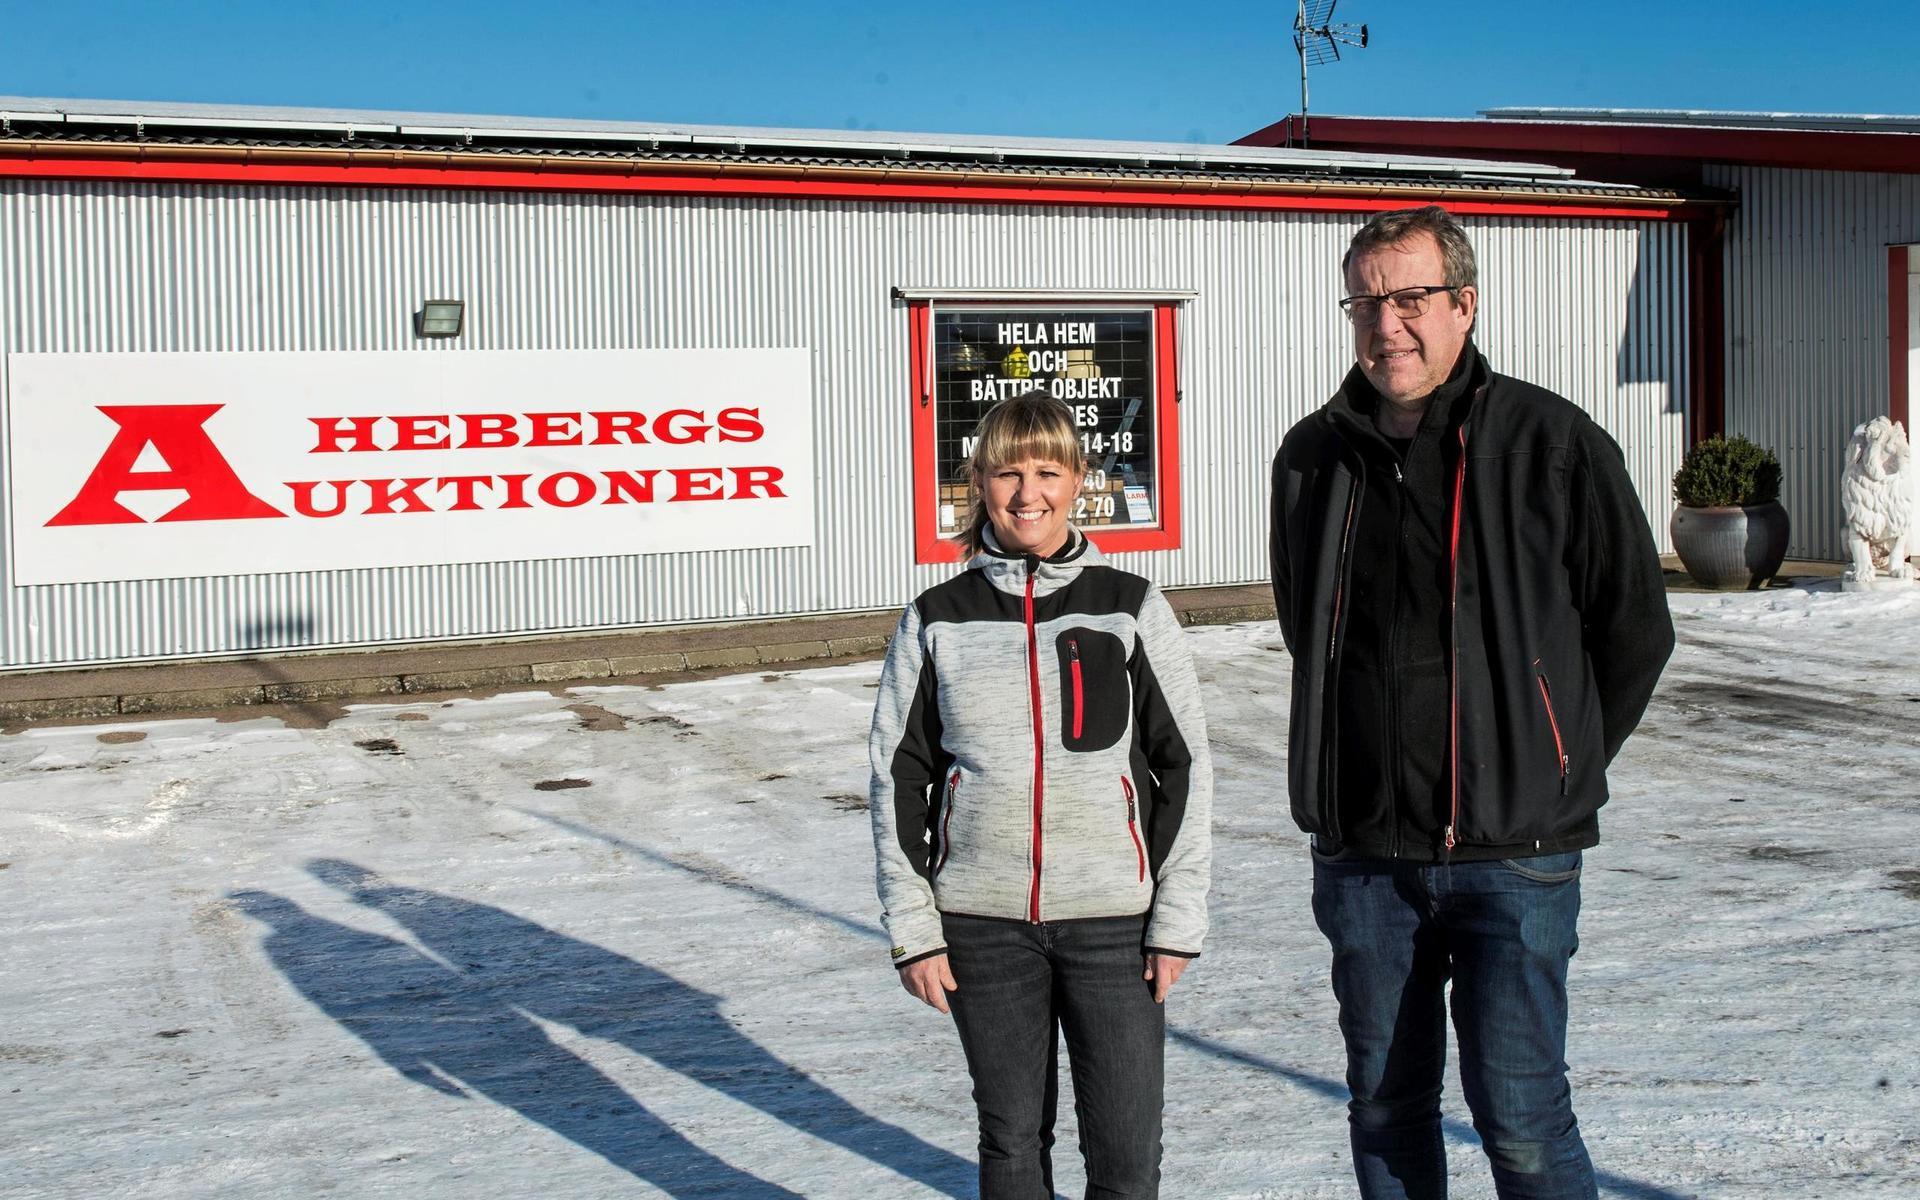 Hebergs auktioner ägs och drivs av gifta paret Lotta och Olof Johansson